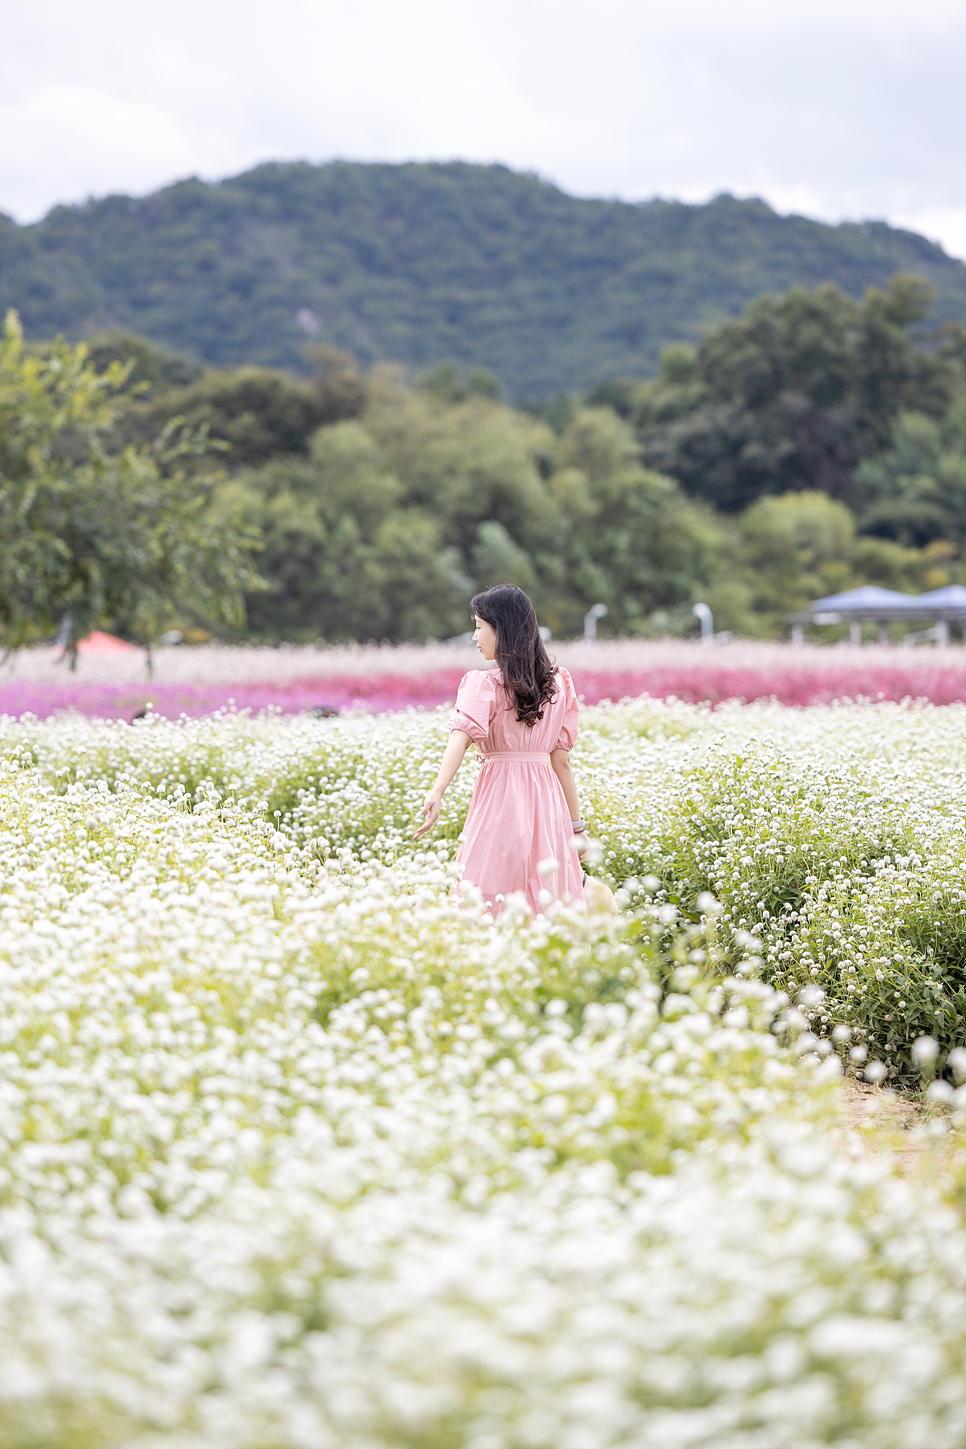 경기도 양주 나리공원 핑크뮬리, 코스모스 가을 꽃구경 (무료입장 예약과 주차)